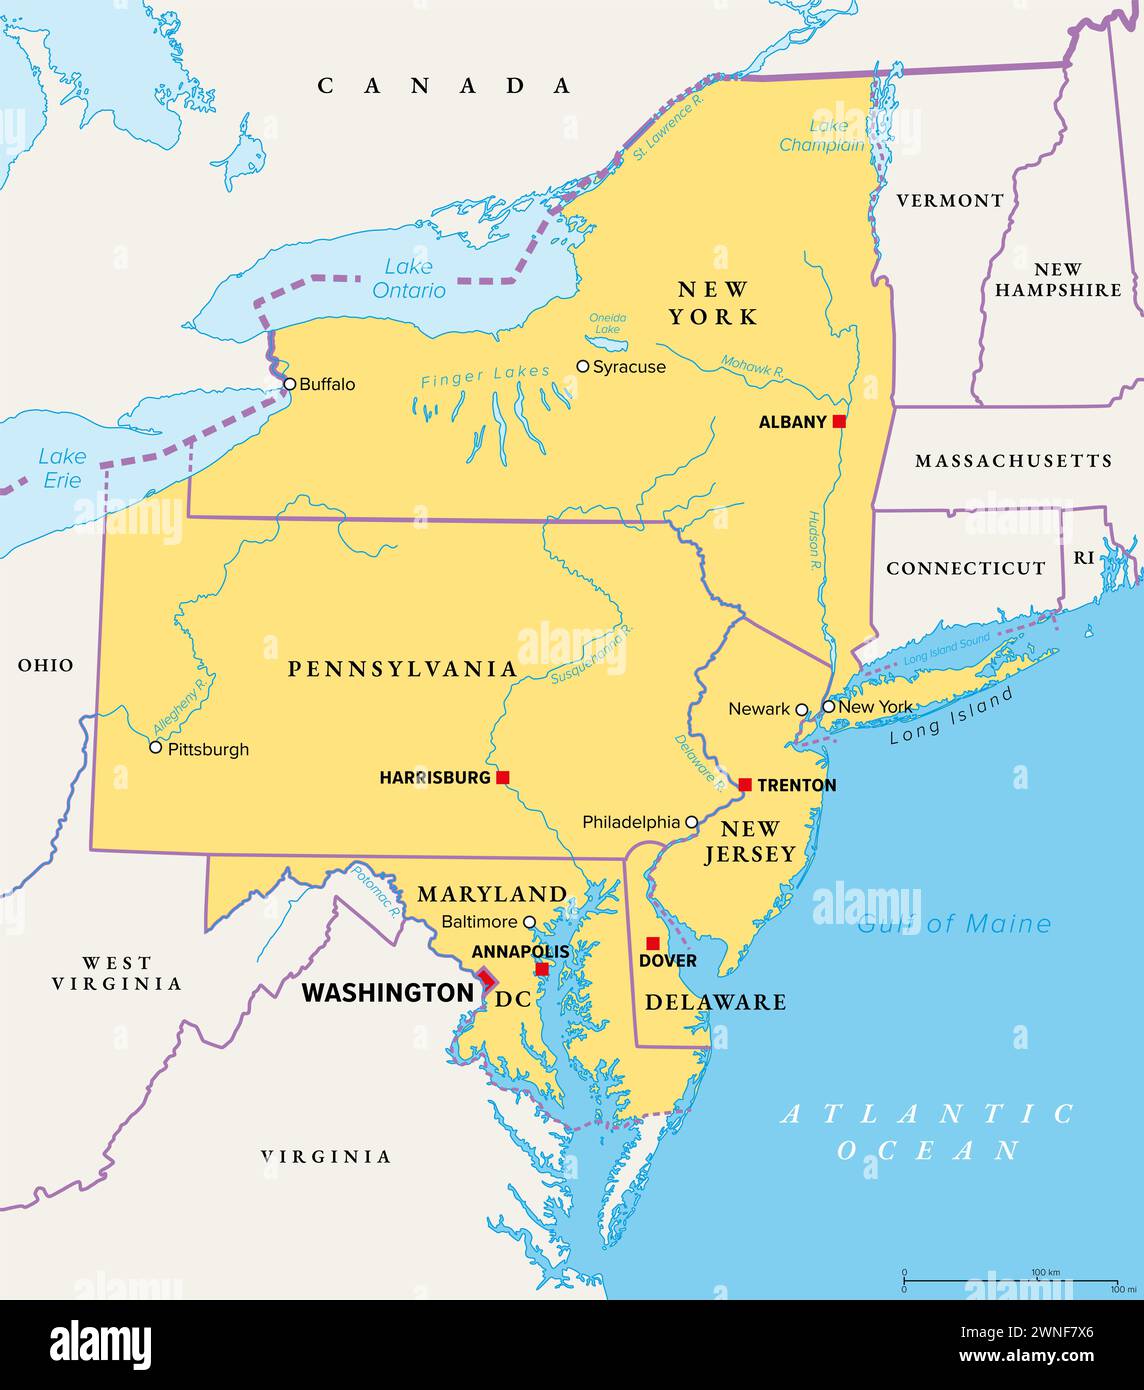 Région mi-atlantique des États-Unis, carte politique. Situé dans le chevauchement entre les états du Nord-est et du Sud-est. Banque D'Images